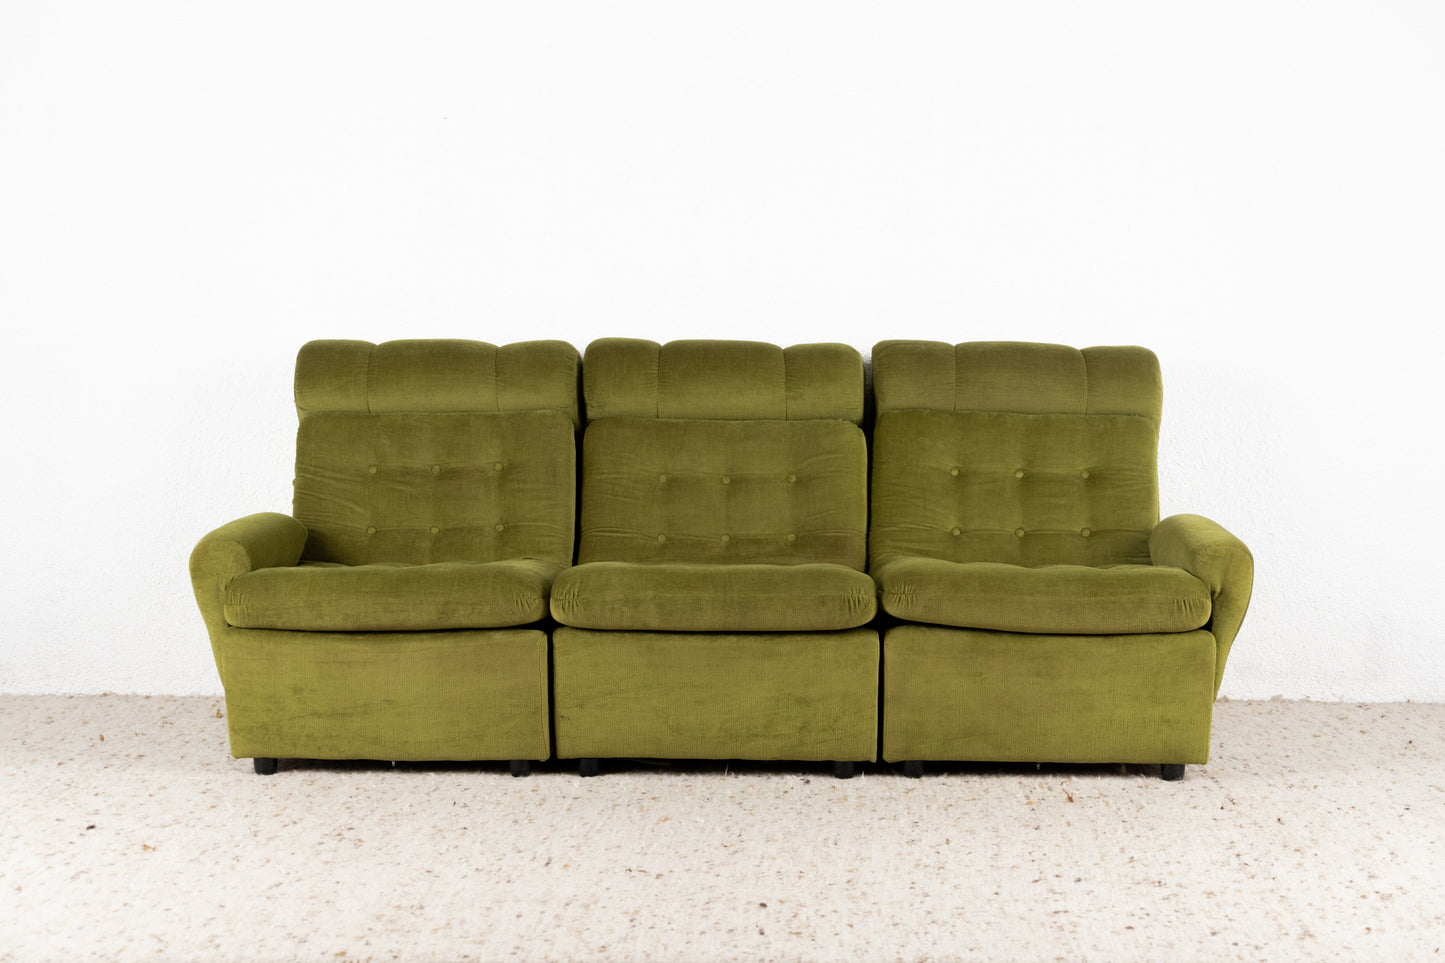 1 von 2 Vintage Sofas 1960er Grün Samt Dreisitzer Retro Mid Century Sessel Couch 60s Modular